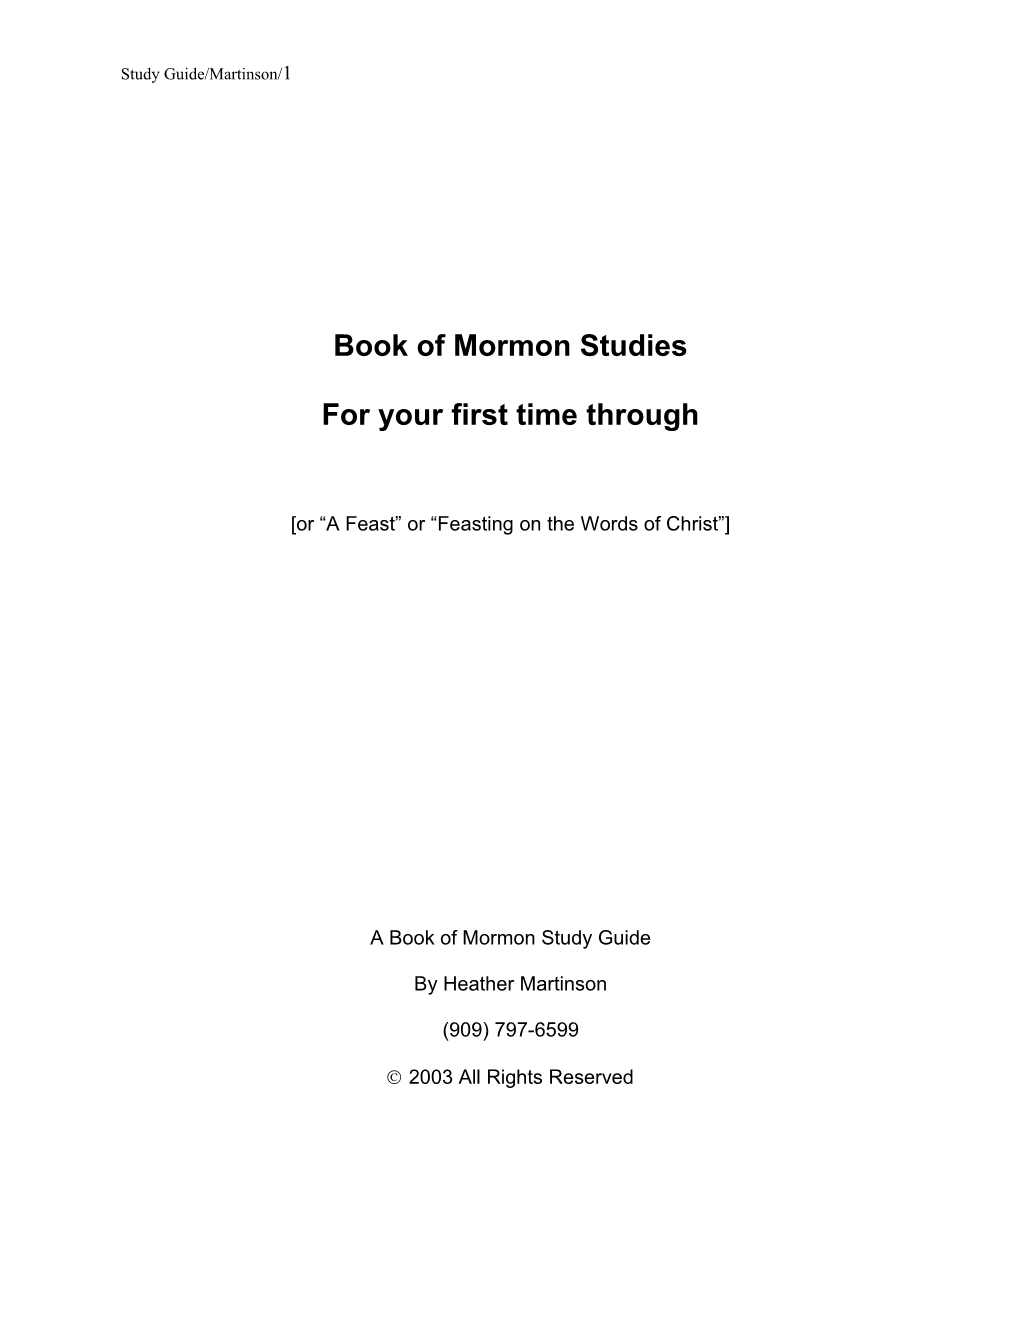 Book of Mormon Studies